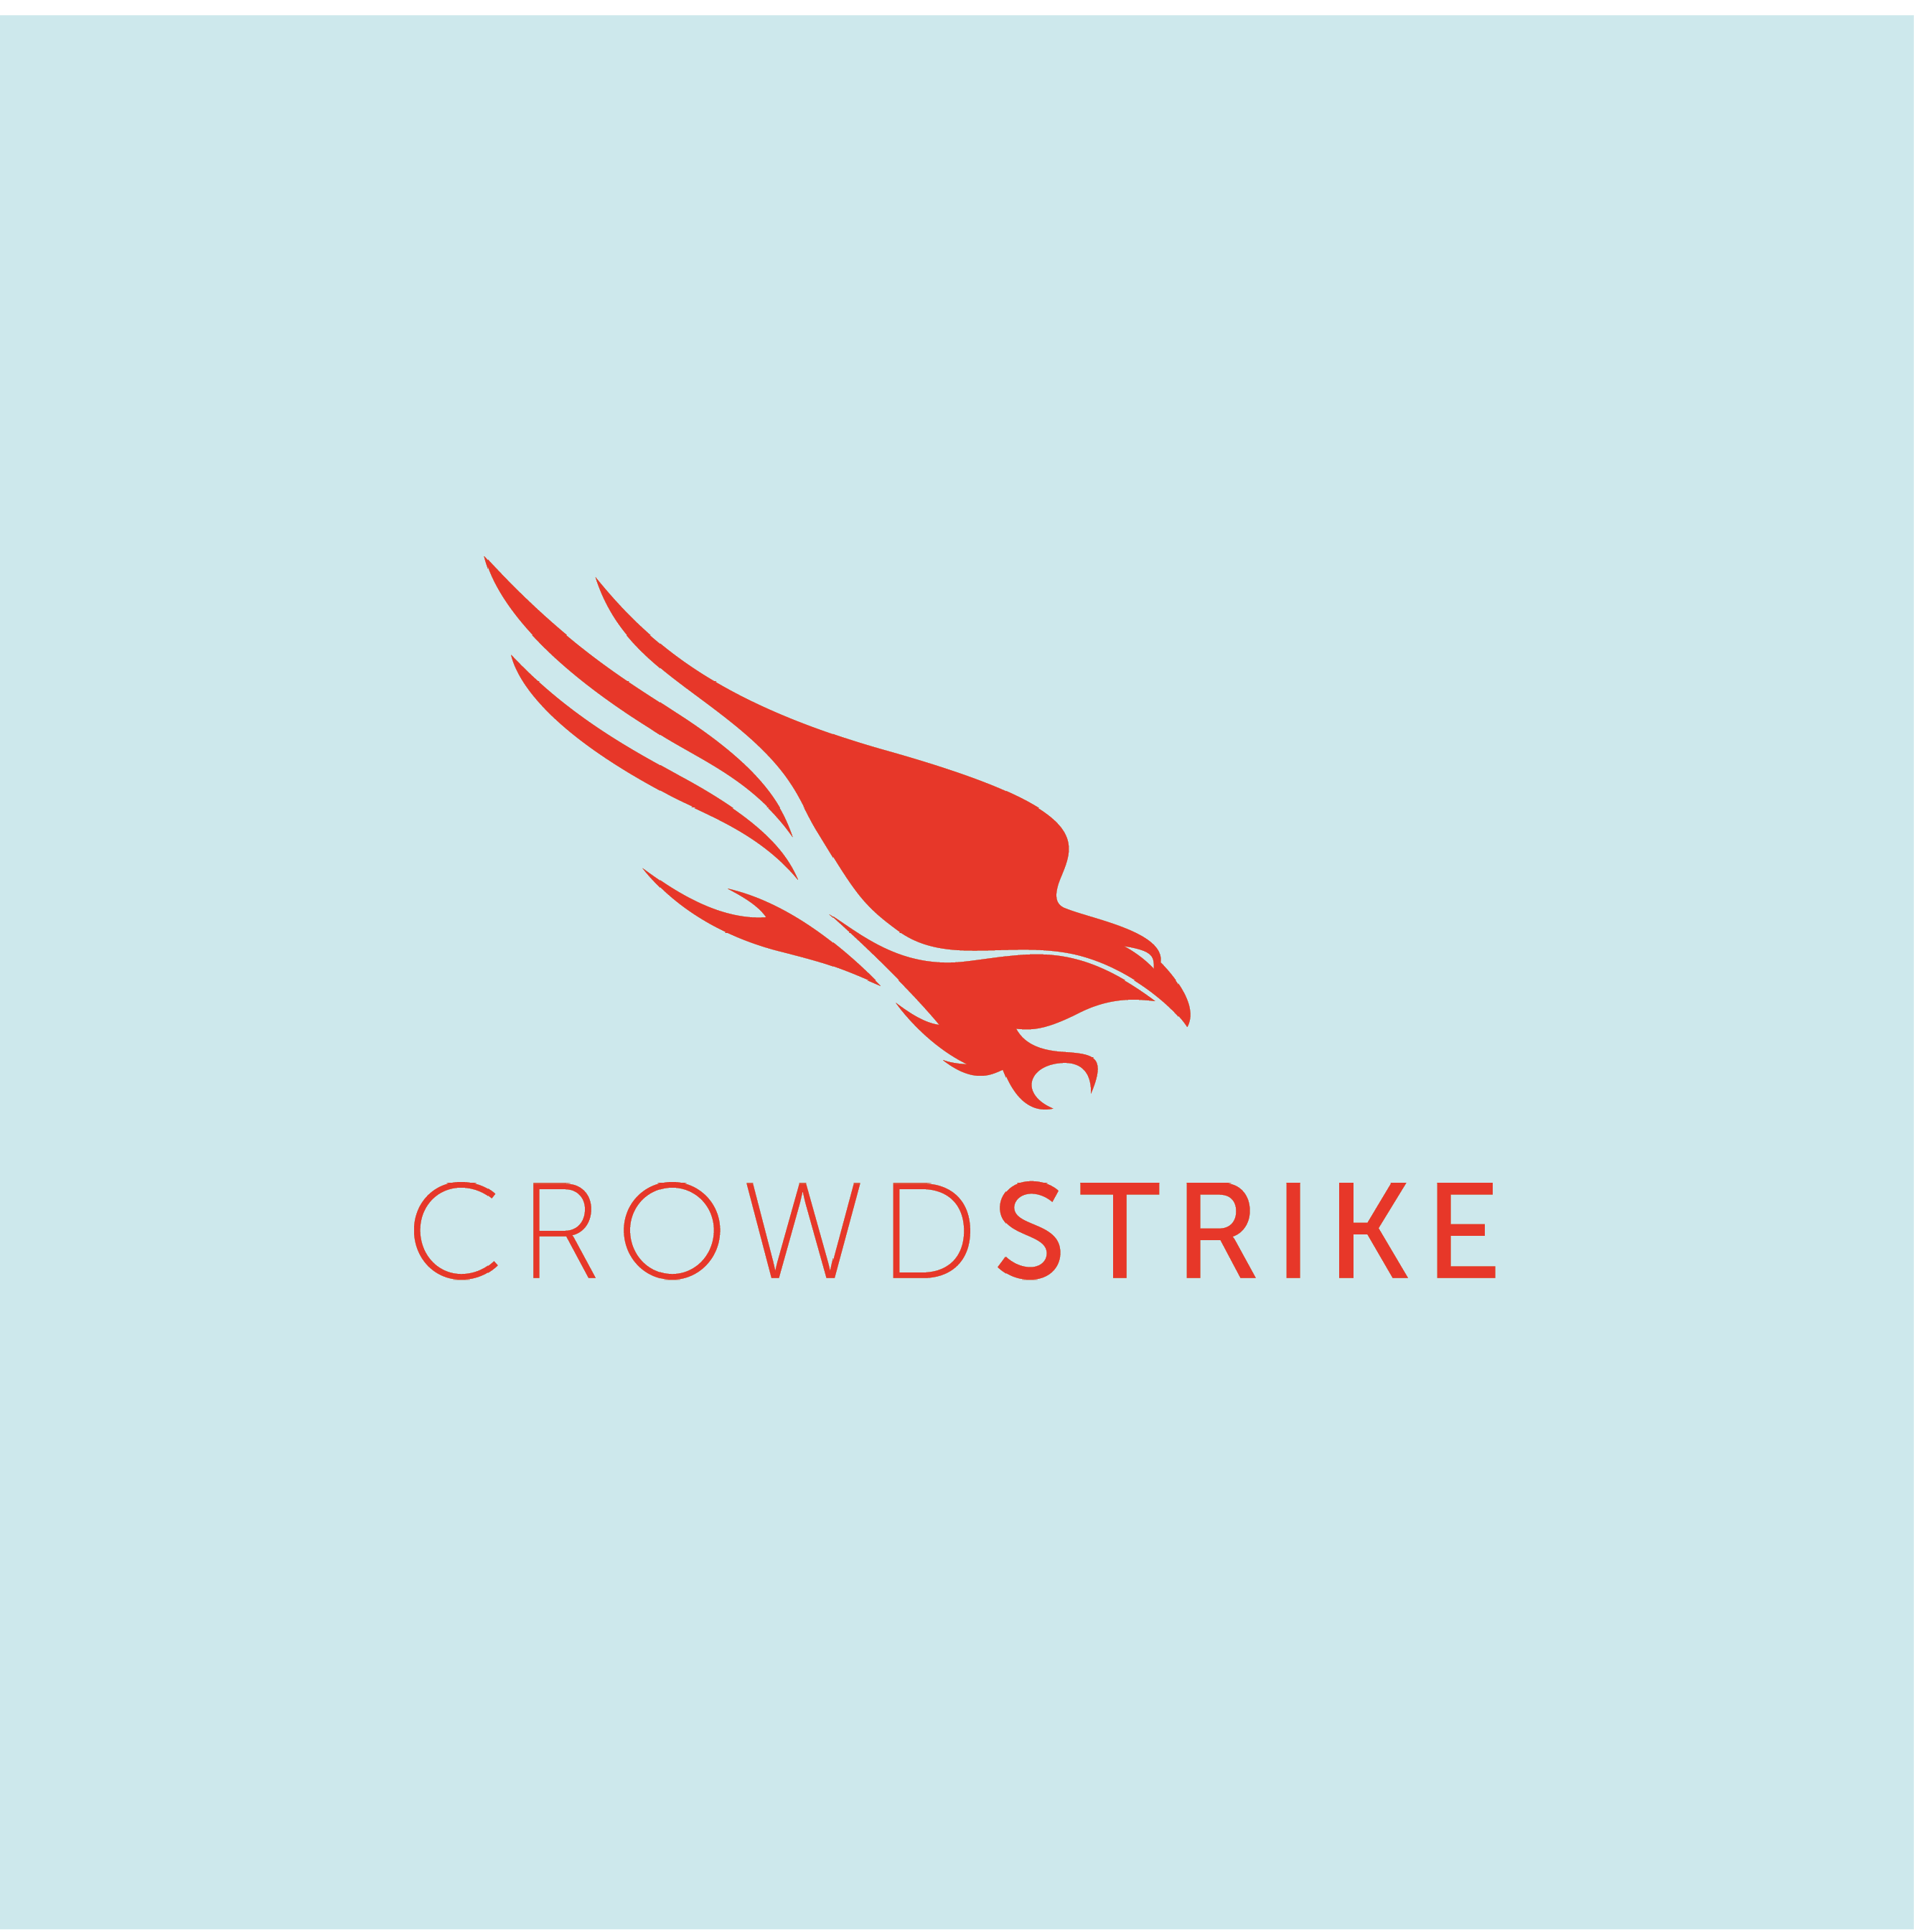 CrowdStrike, Inc.